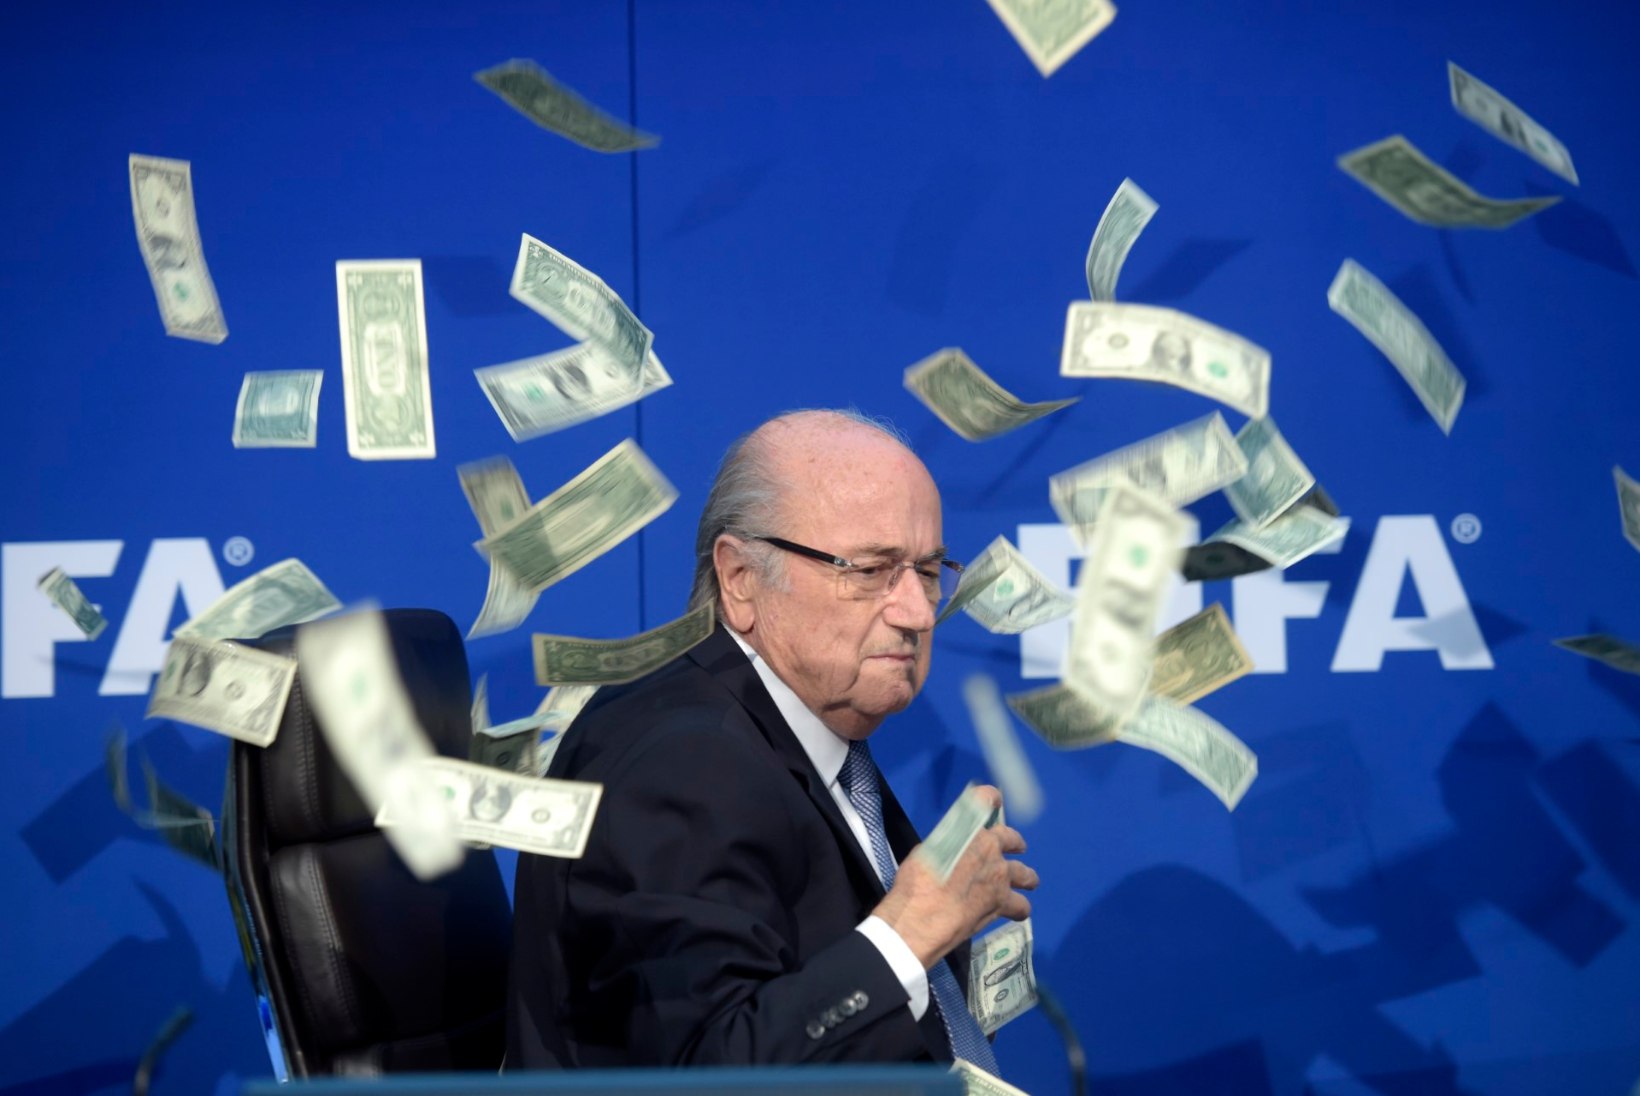 FOTOD ja VIDEO | Sepp Blatterile korraldati pressikonverentsi eel rahadušš